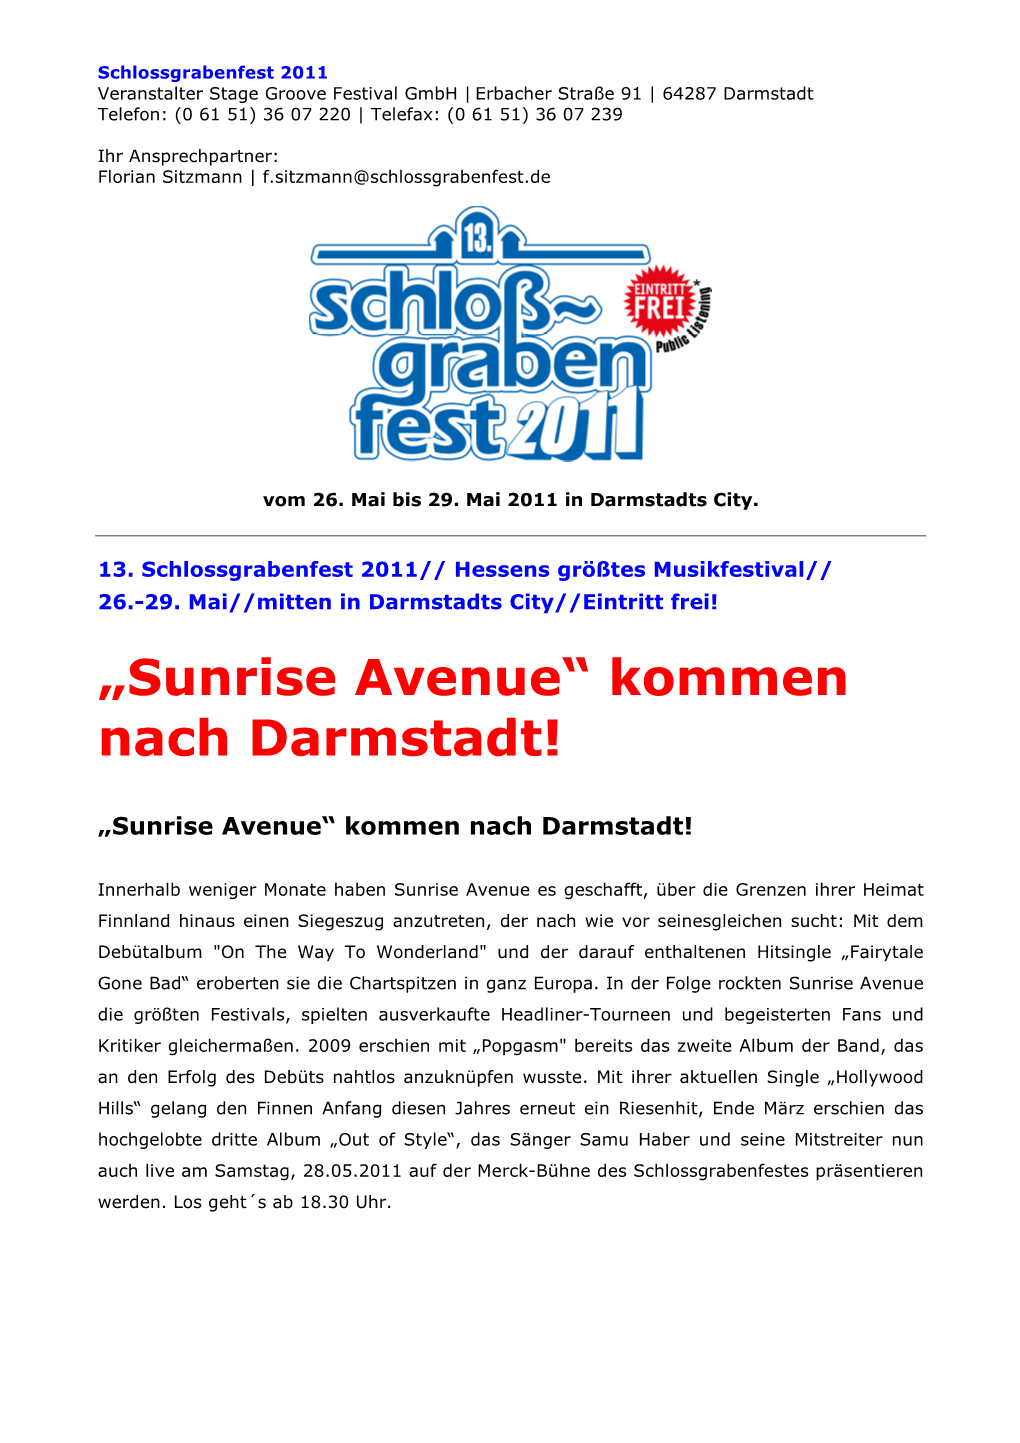 Sunrise Avenue“ Kommen Nach Darmstadt!